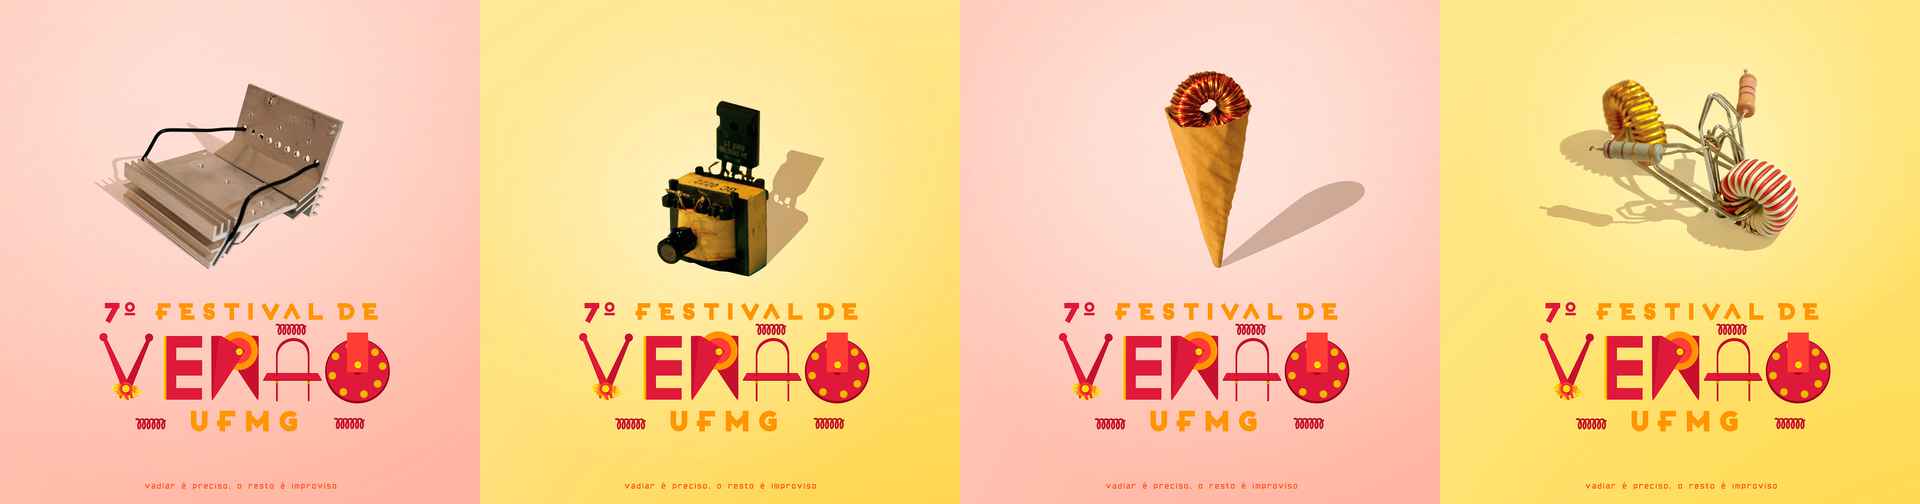 Cartazes da 7ª edição do Festival de Verão da UFMG